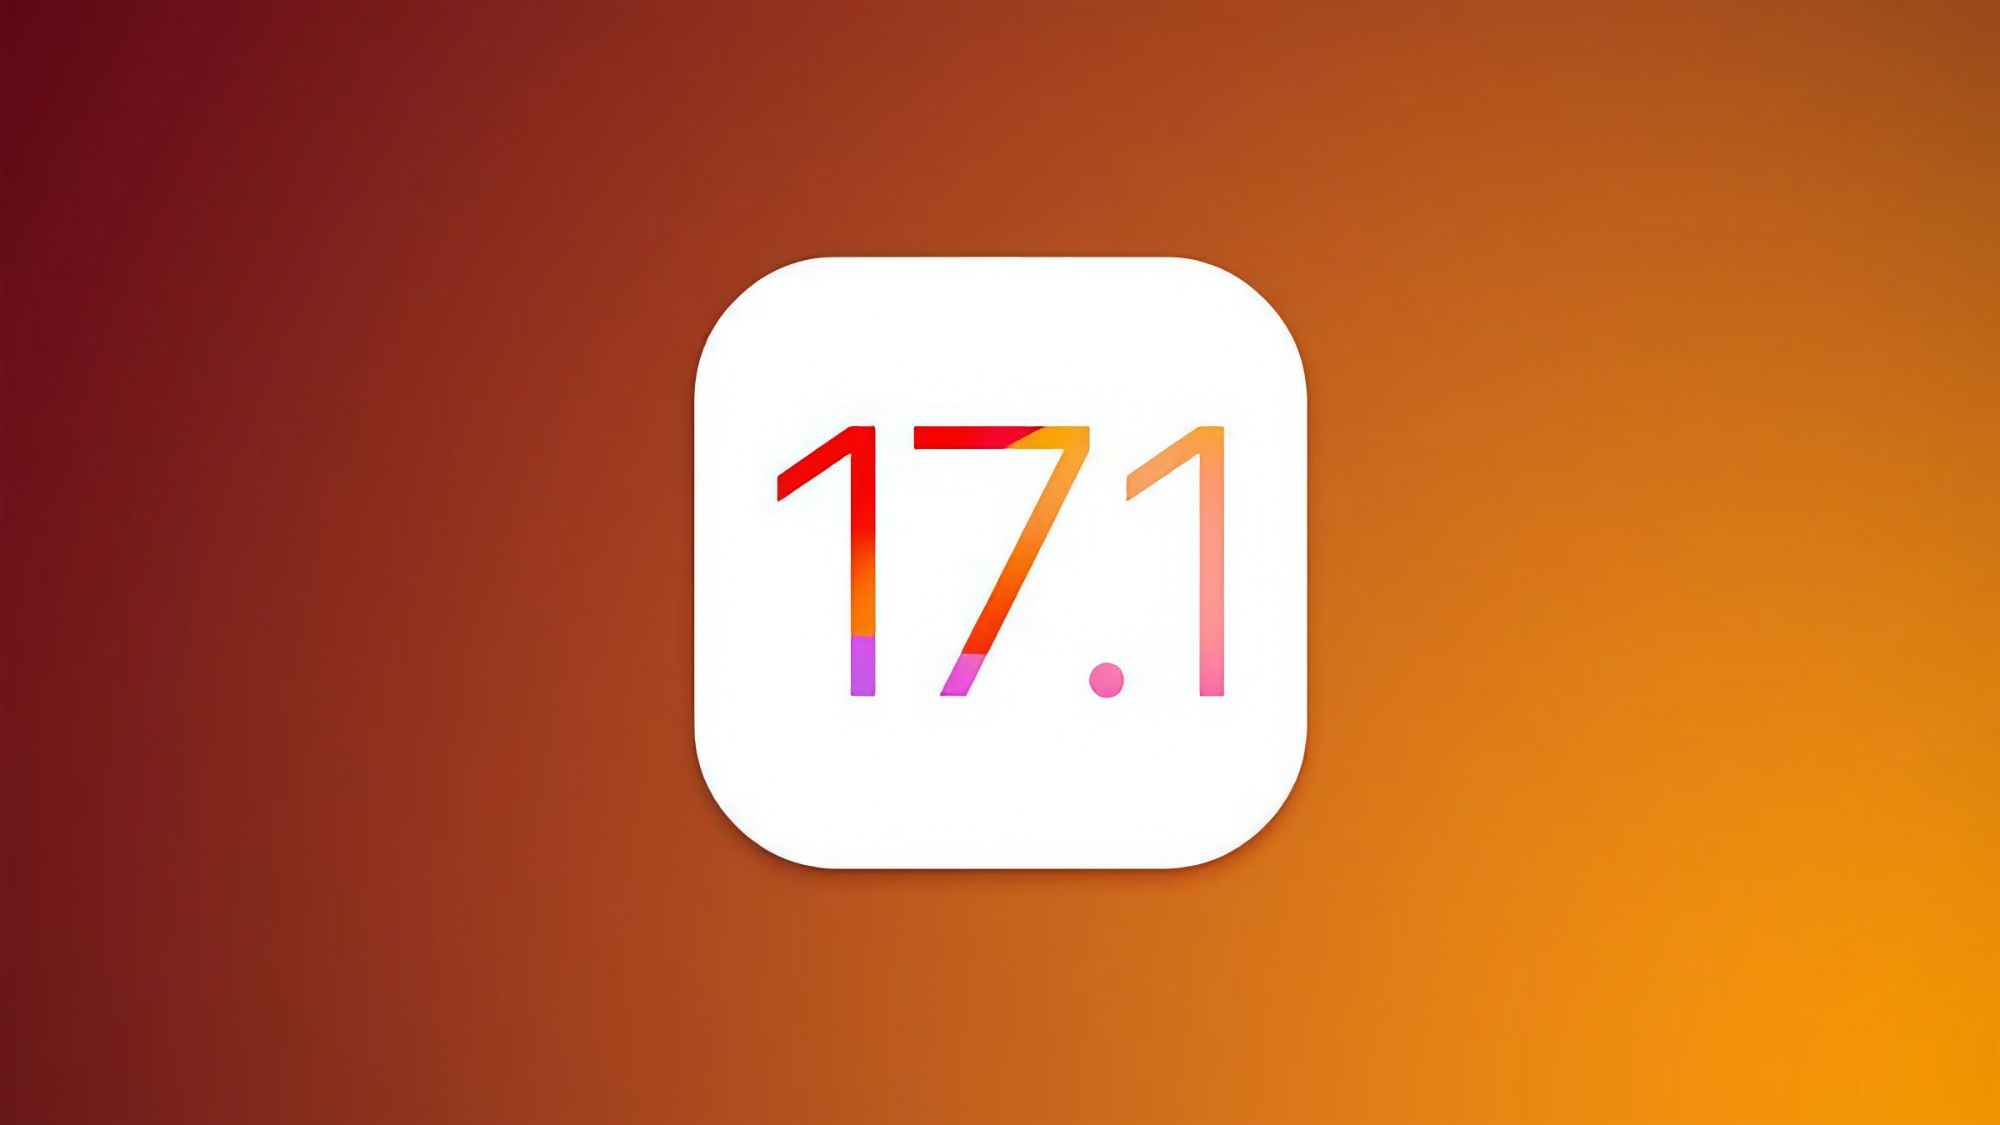 Apple hat iOS 17.1 Beta 2 veröffentlicht: Was ist neu?